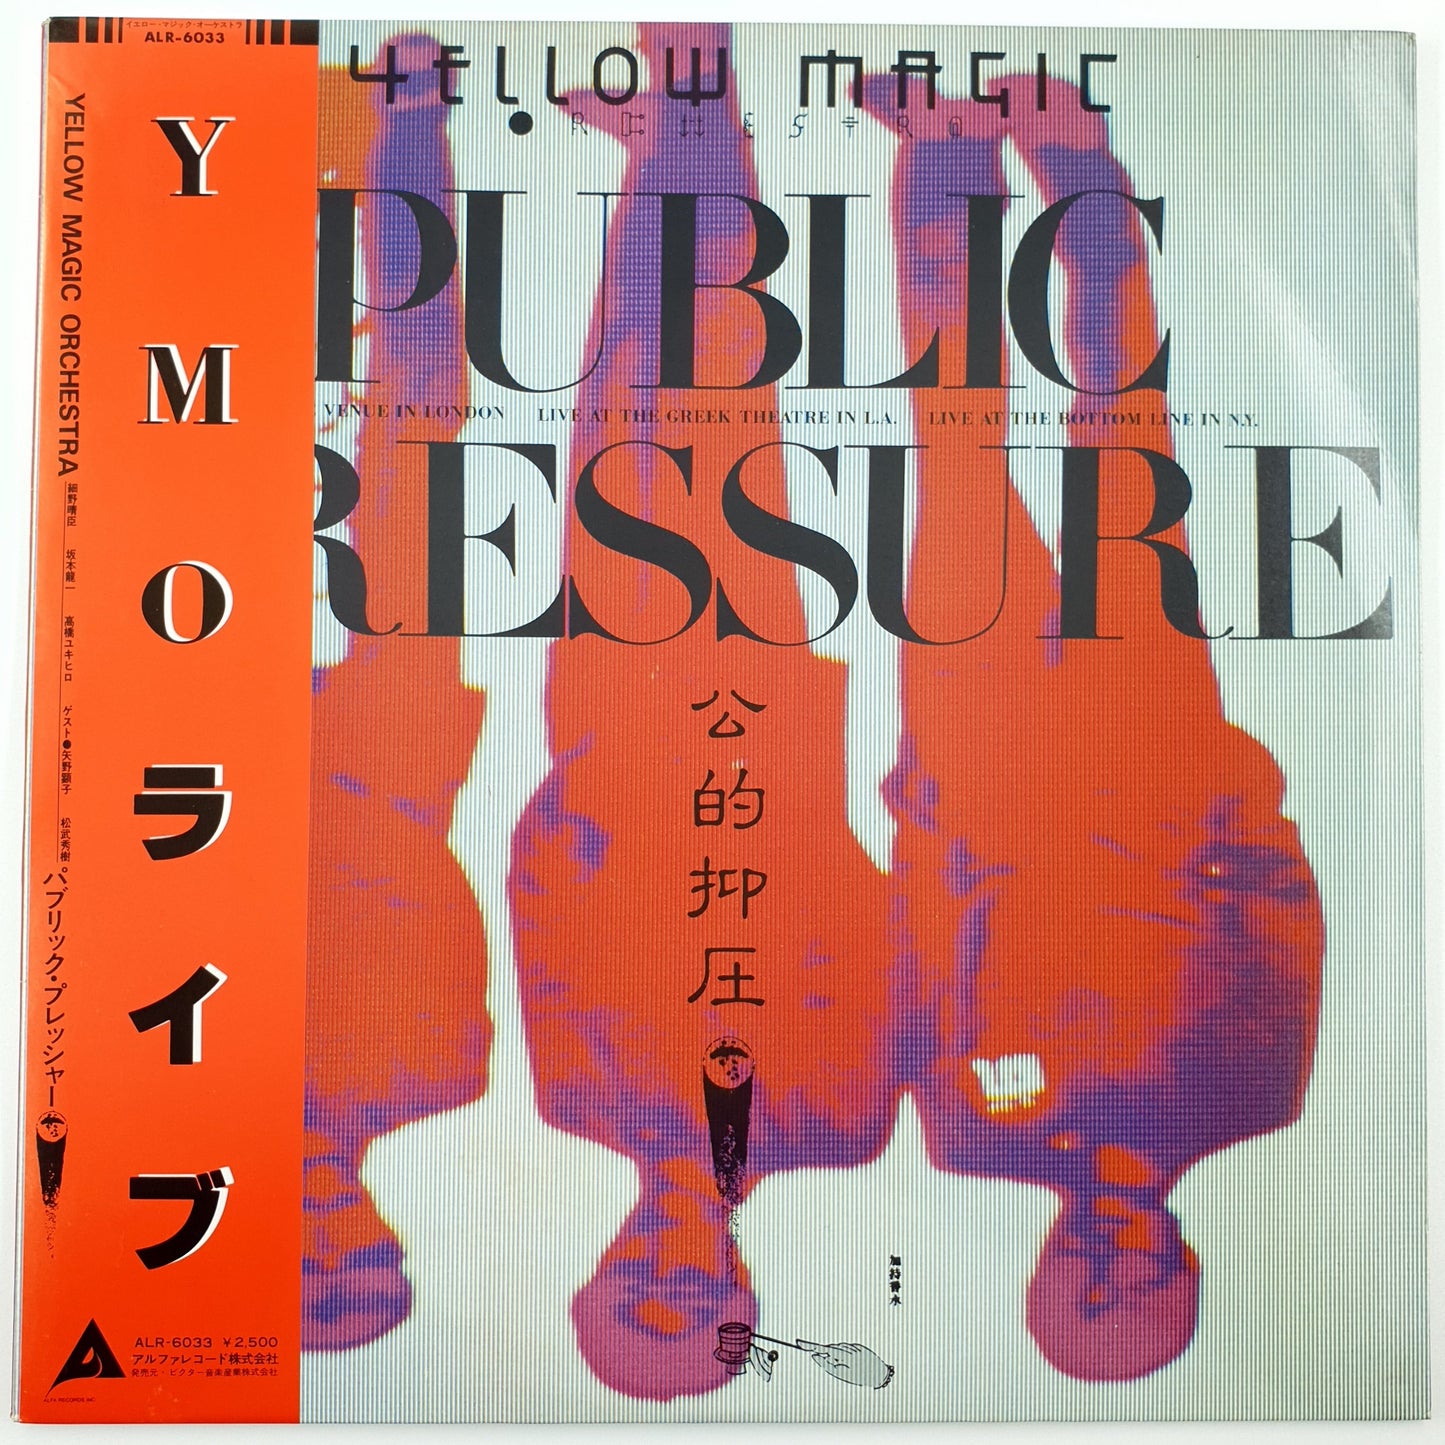 Yellow Magic Orchestra – Public Pressure